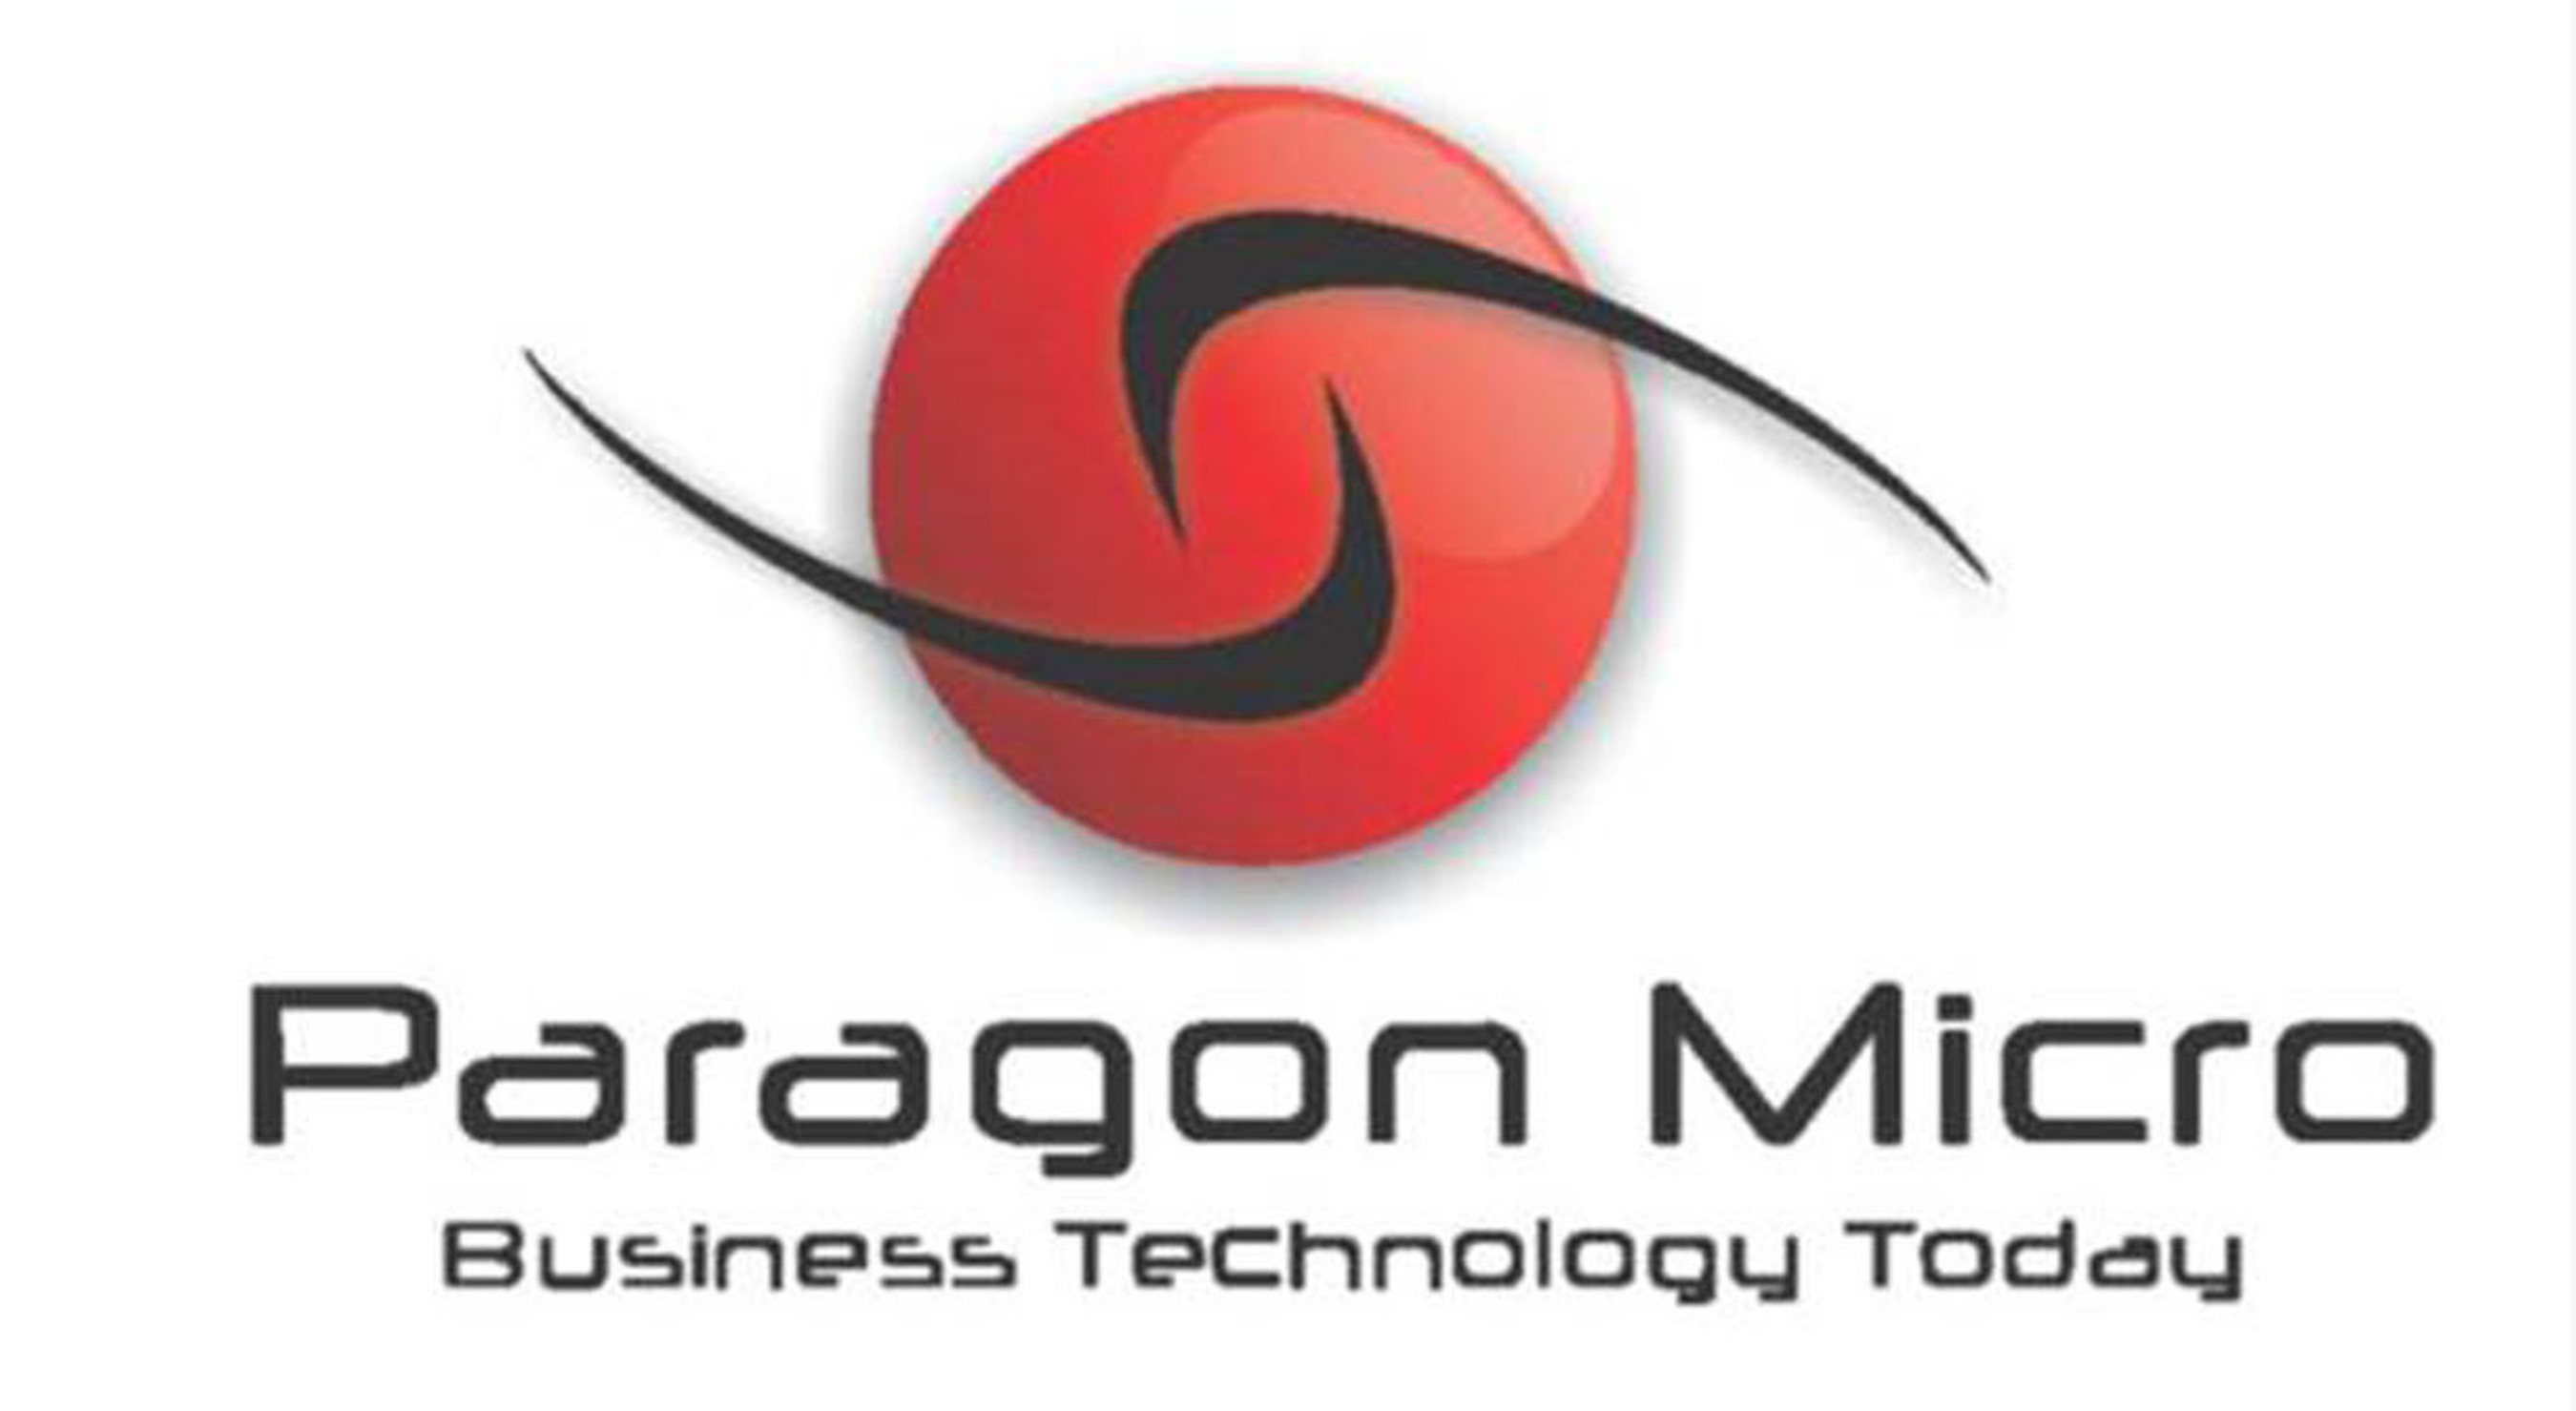 Paragon Micro, Inc. Logo.